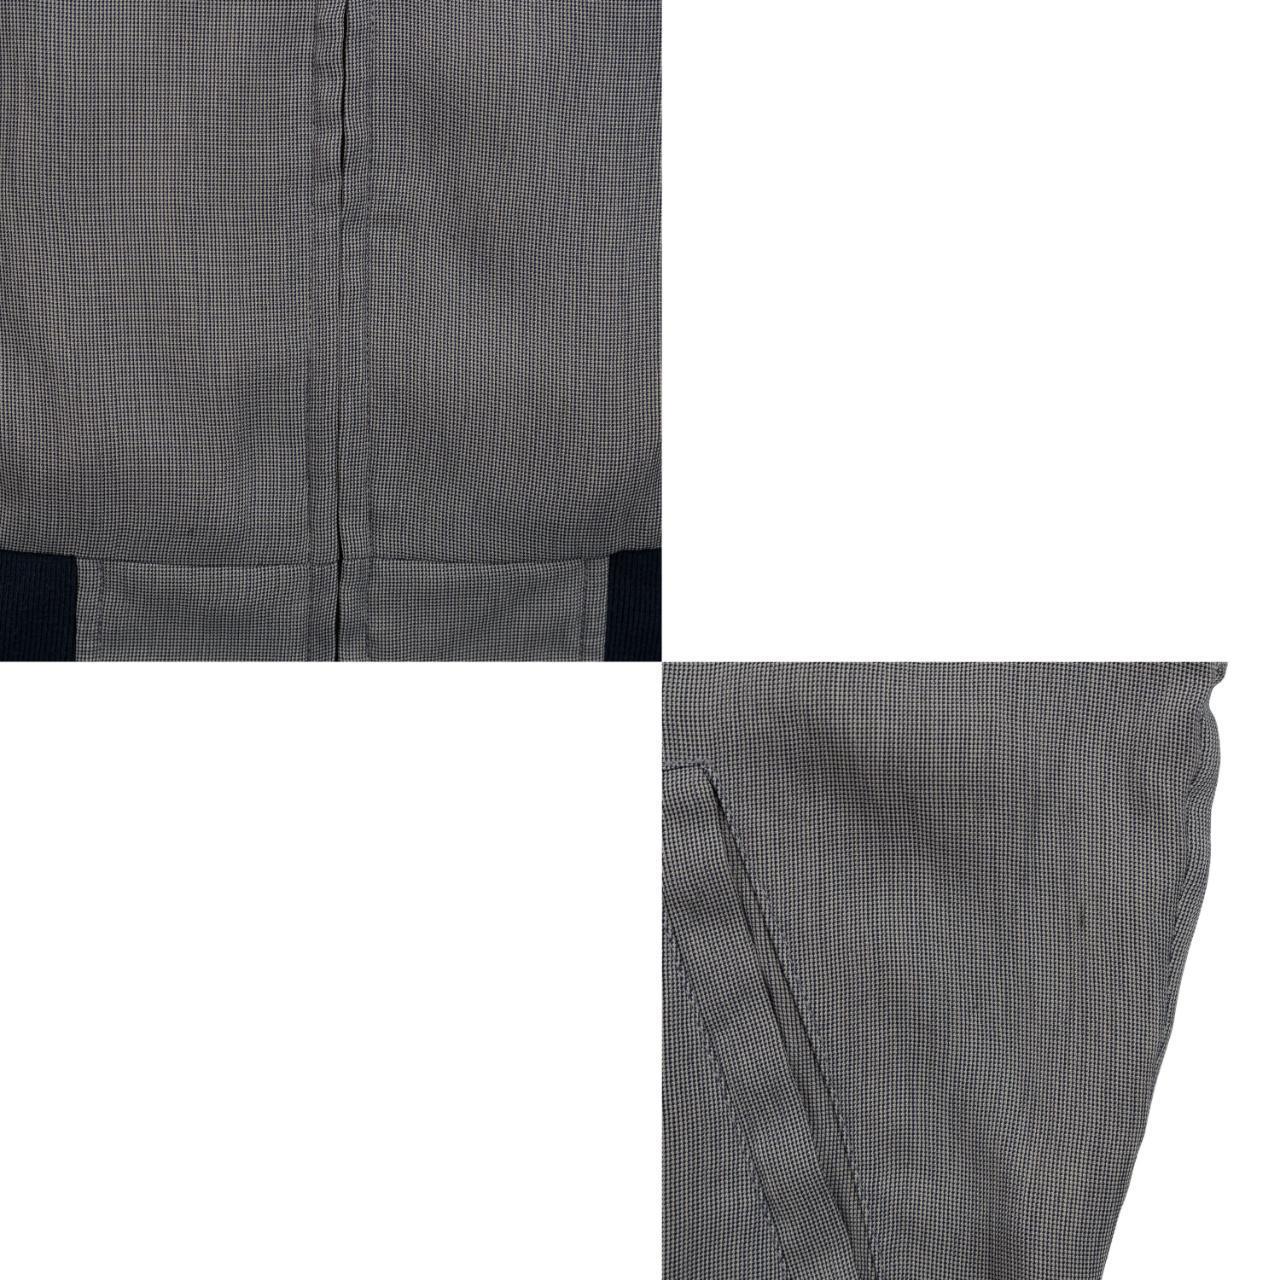 Vintage YSL Yves Saint Laurent Harrington Jacket Size L - Known Source